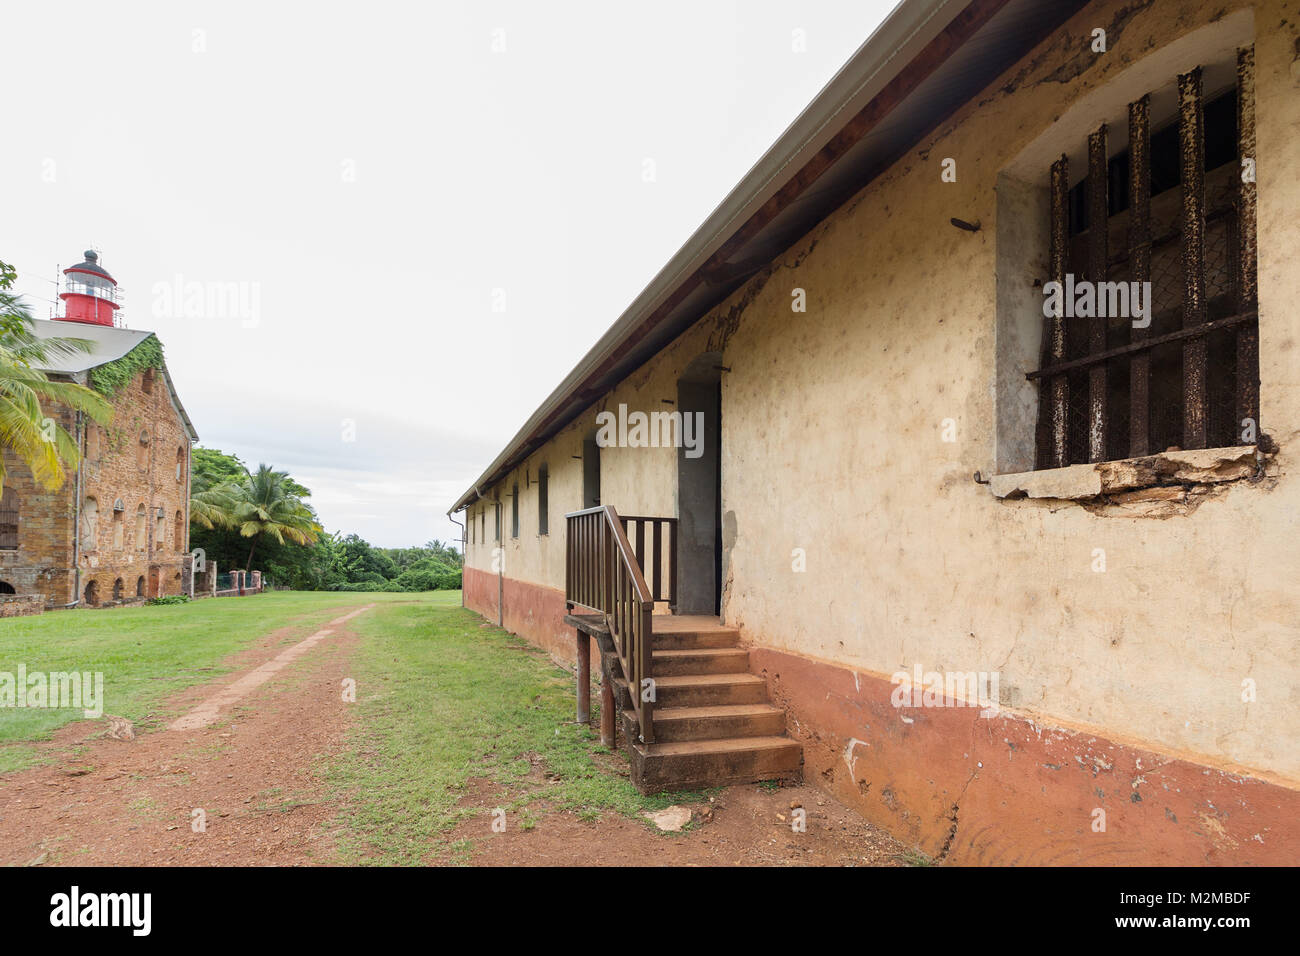 Rovine della ex colonia penale presso Ile Royale, una delle isole di Iles du Salut (isole di salvezza) in Guiana francese. Foto Stock